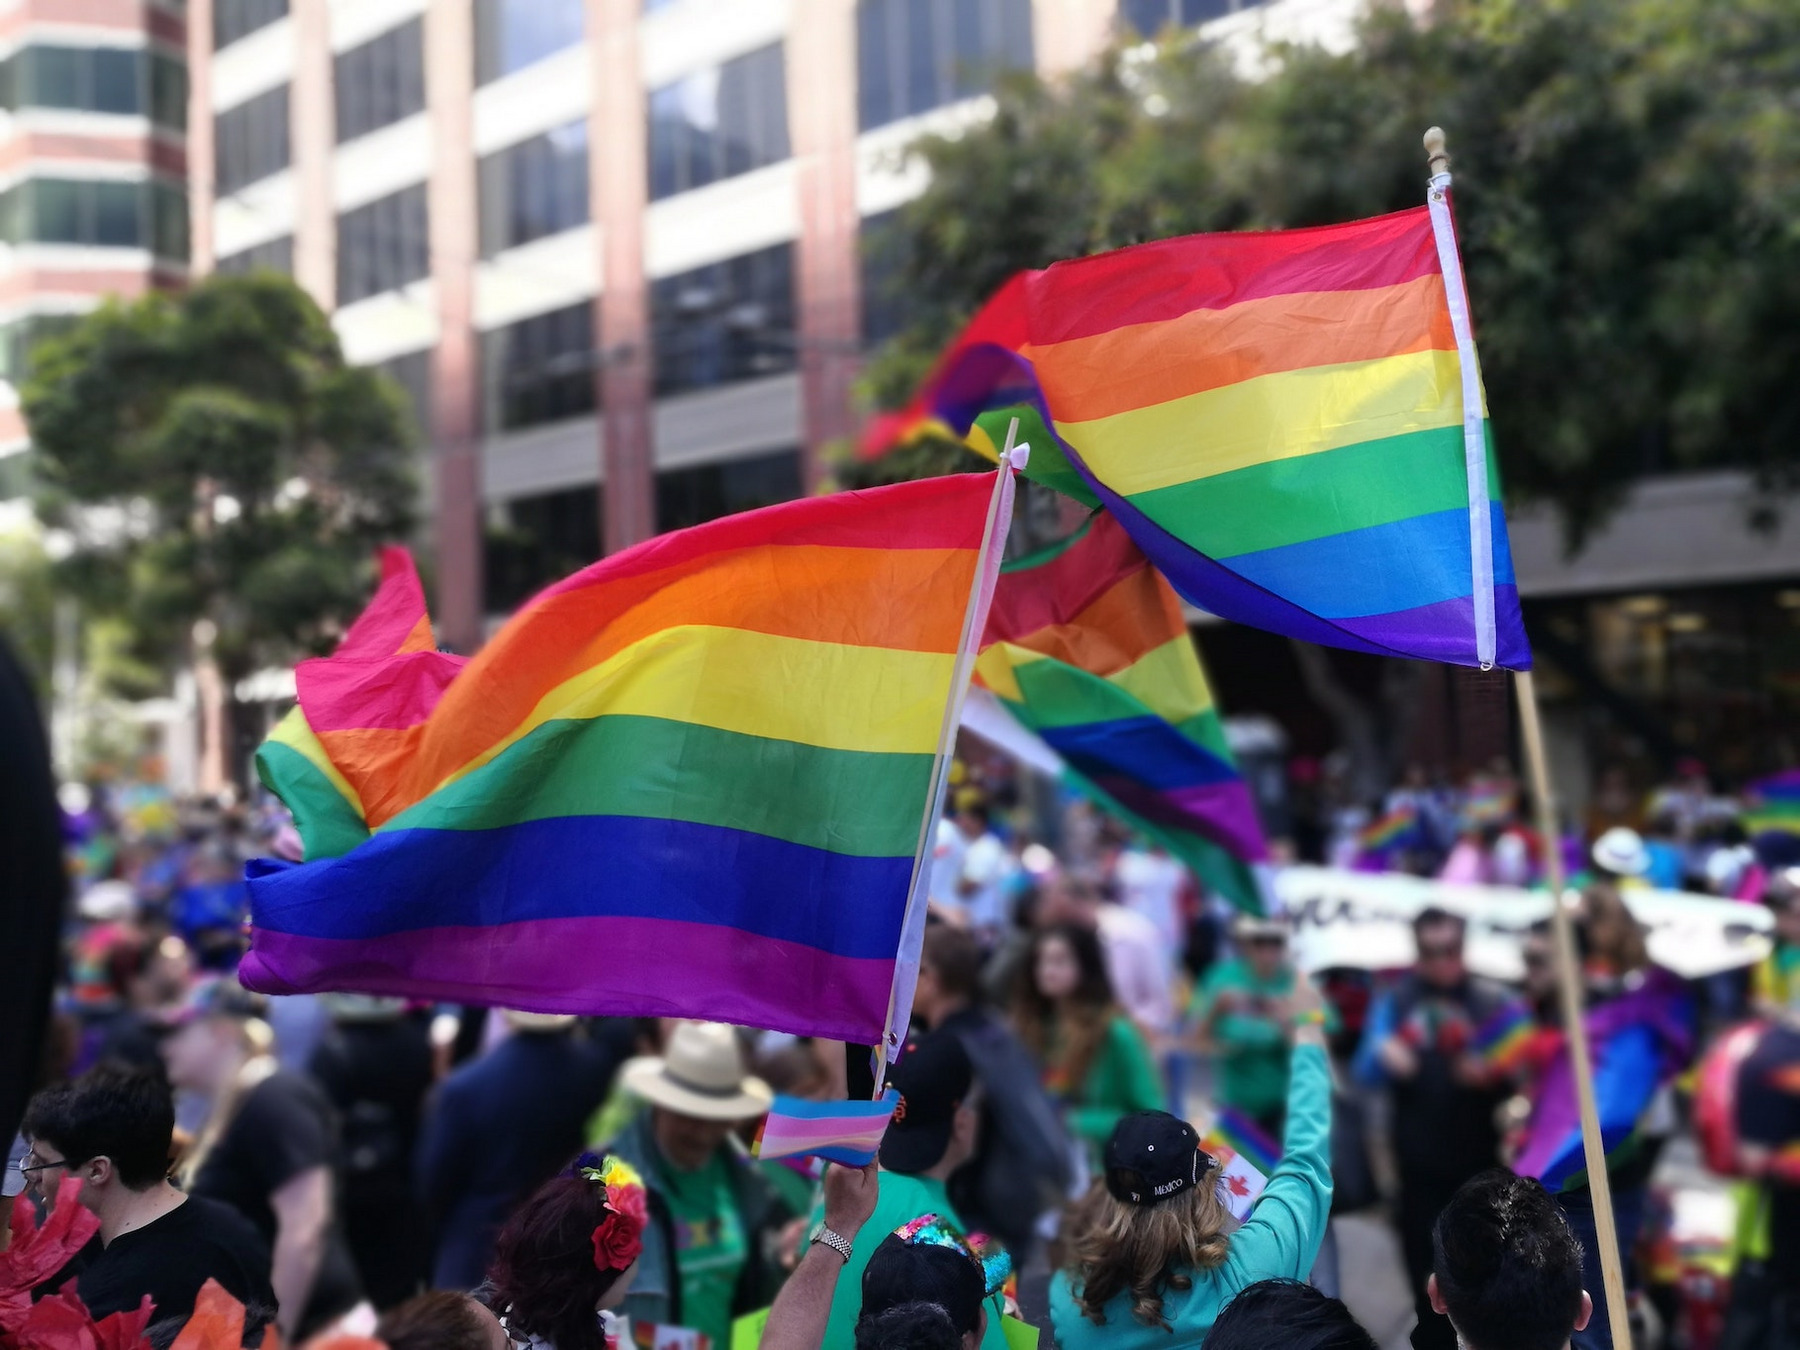 Menschen auf einer Demonstration mit Regenbogenflaggen